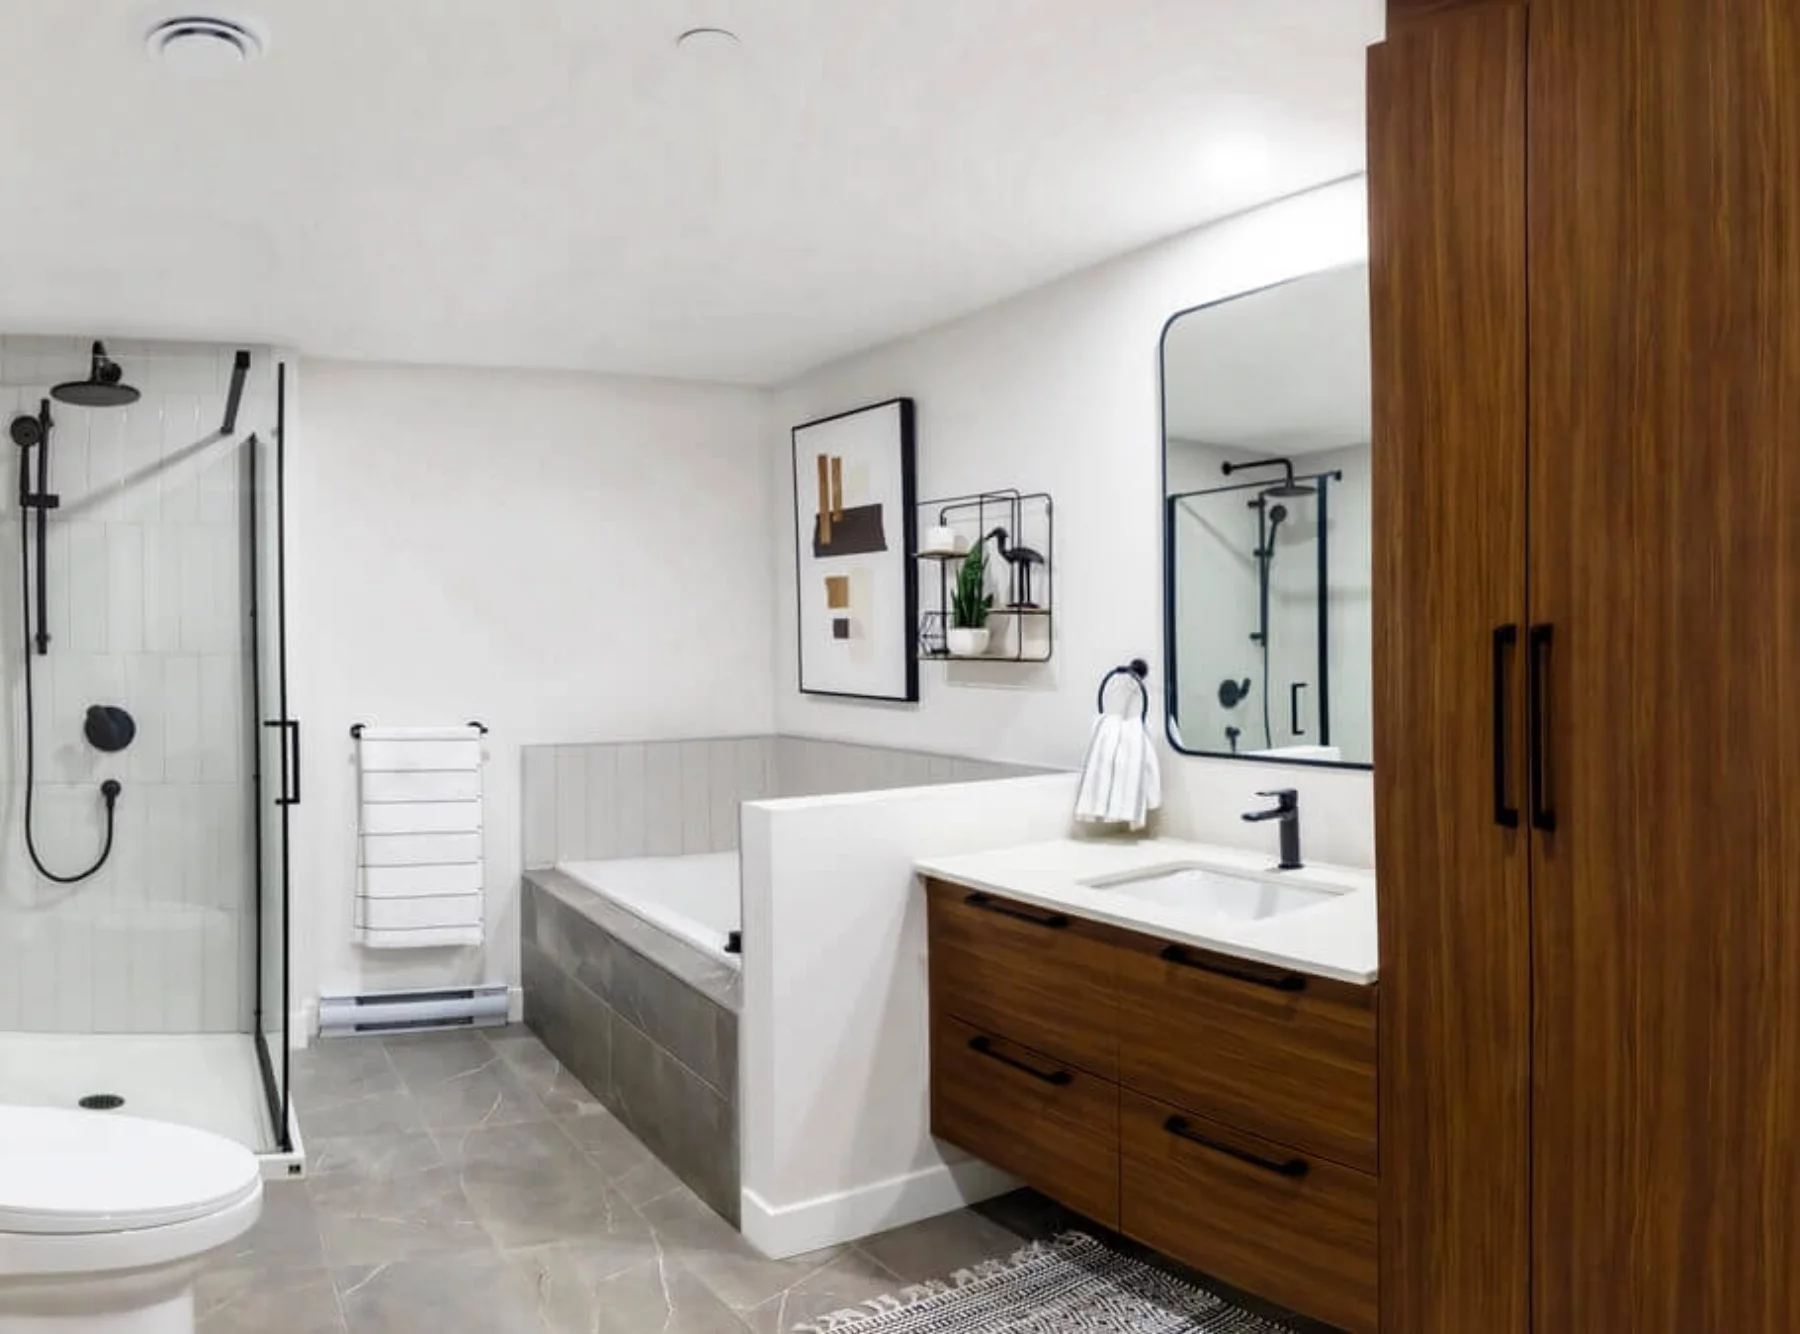 Appartement 3 ½ - Salle de bain spacieuse avec bain et douche en verre indépendante - Comptoir de quartz